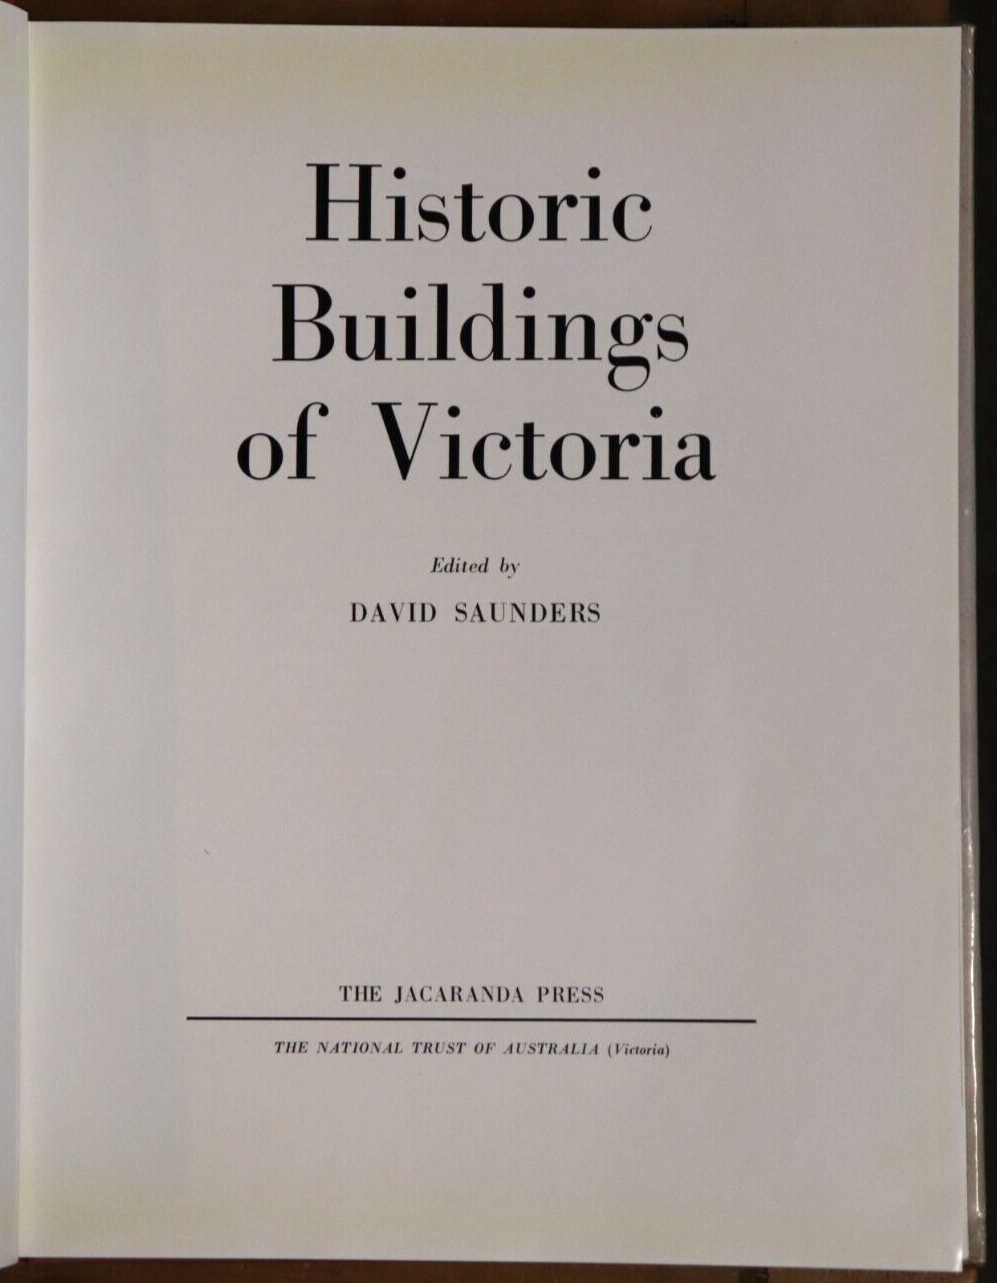 Historic Building of Victoria - 1966 - 1st Edition Australian Architecture Book - 0